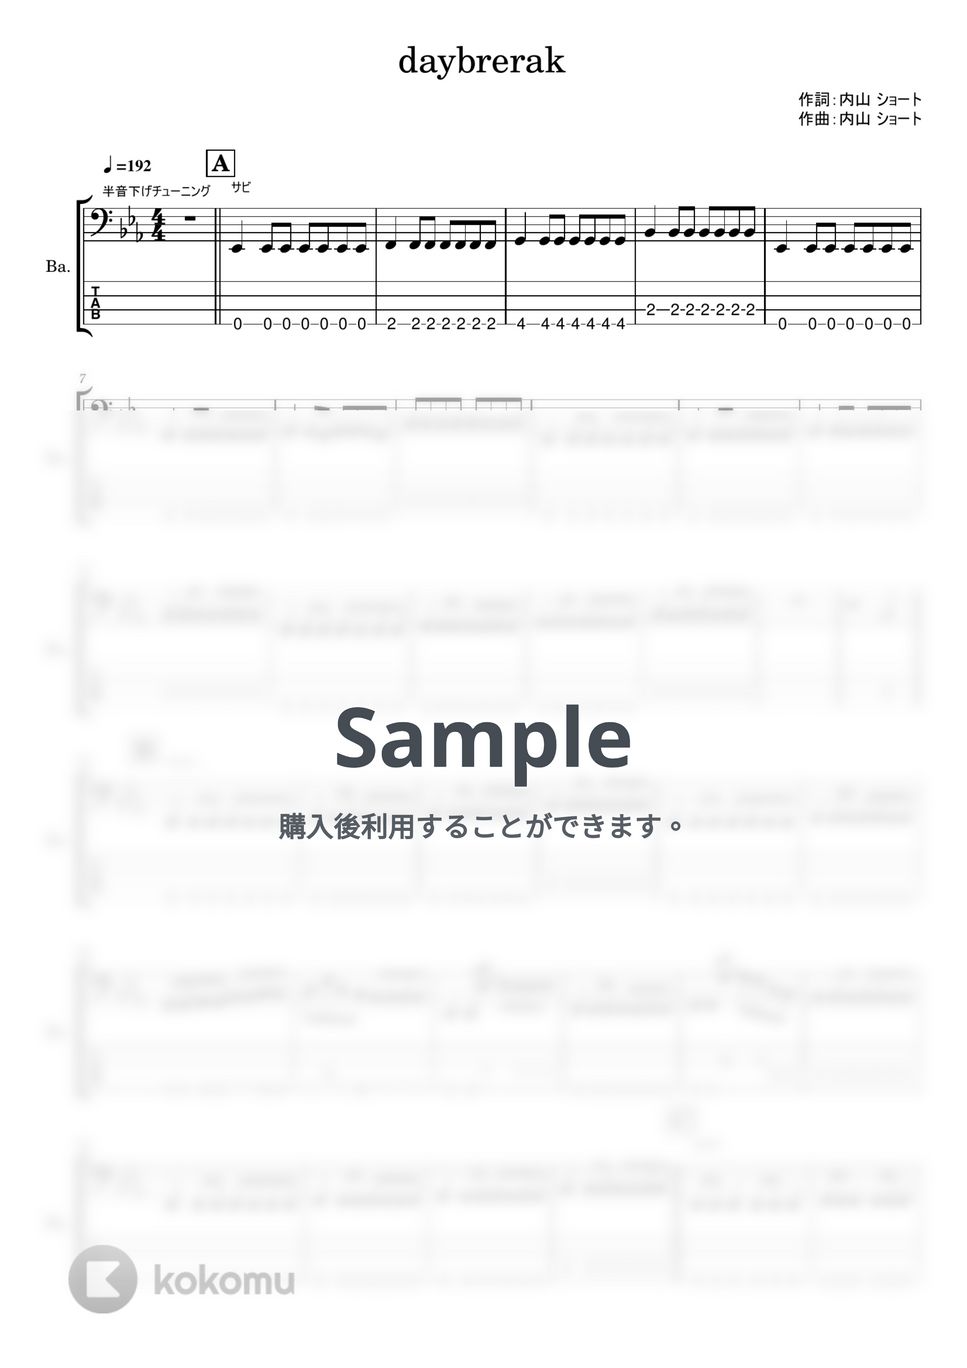 シンガーズハイ - daybreak (ベースTAB譜) by やまさんルーム